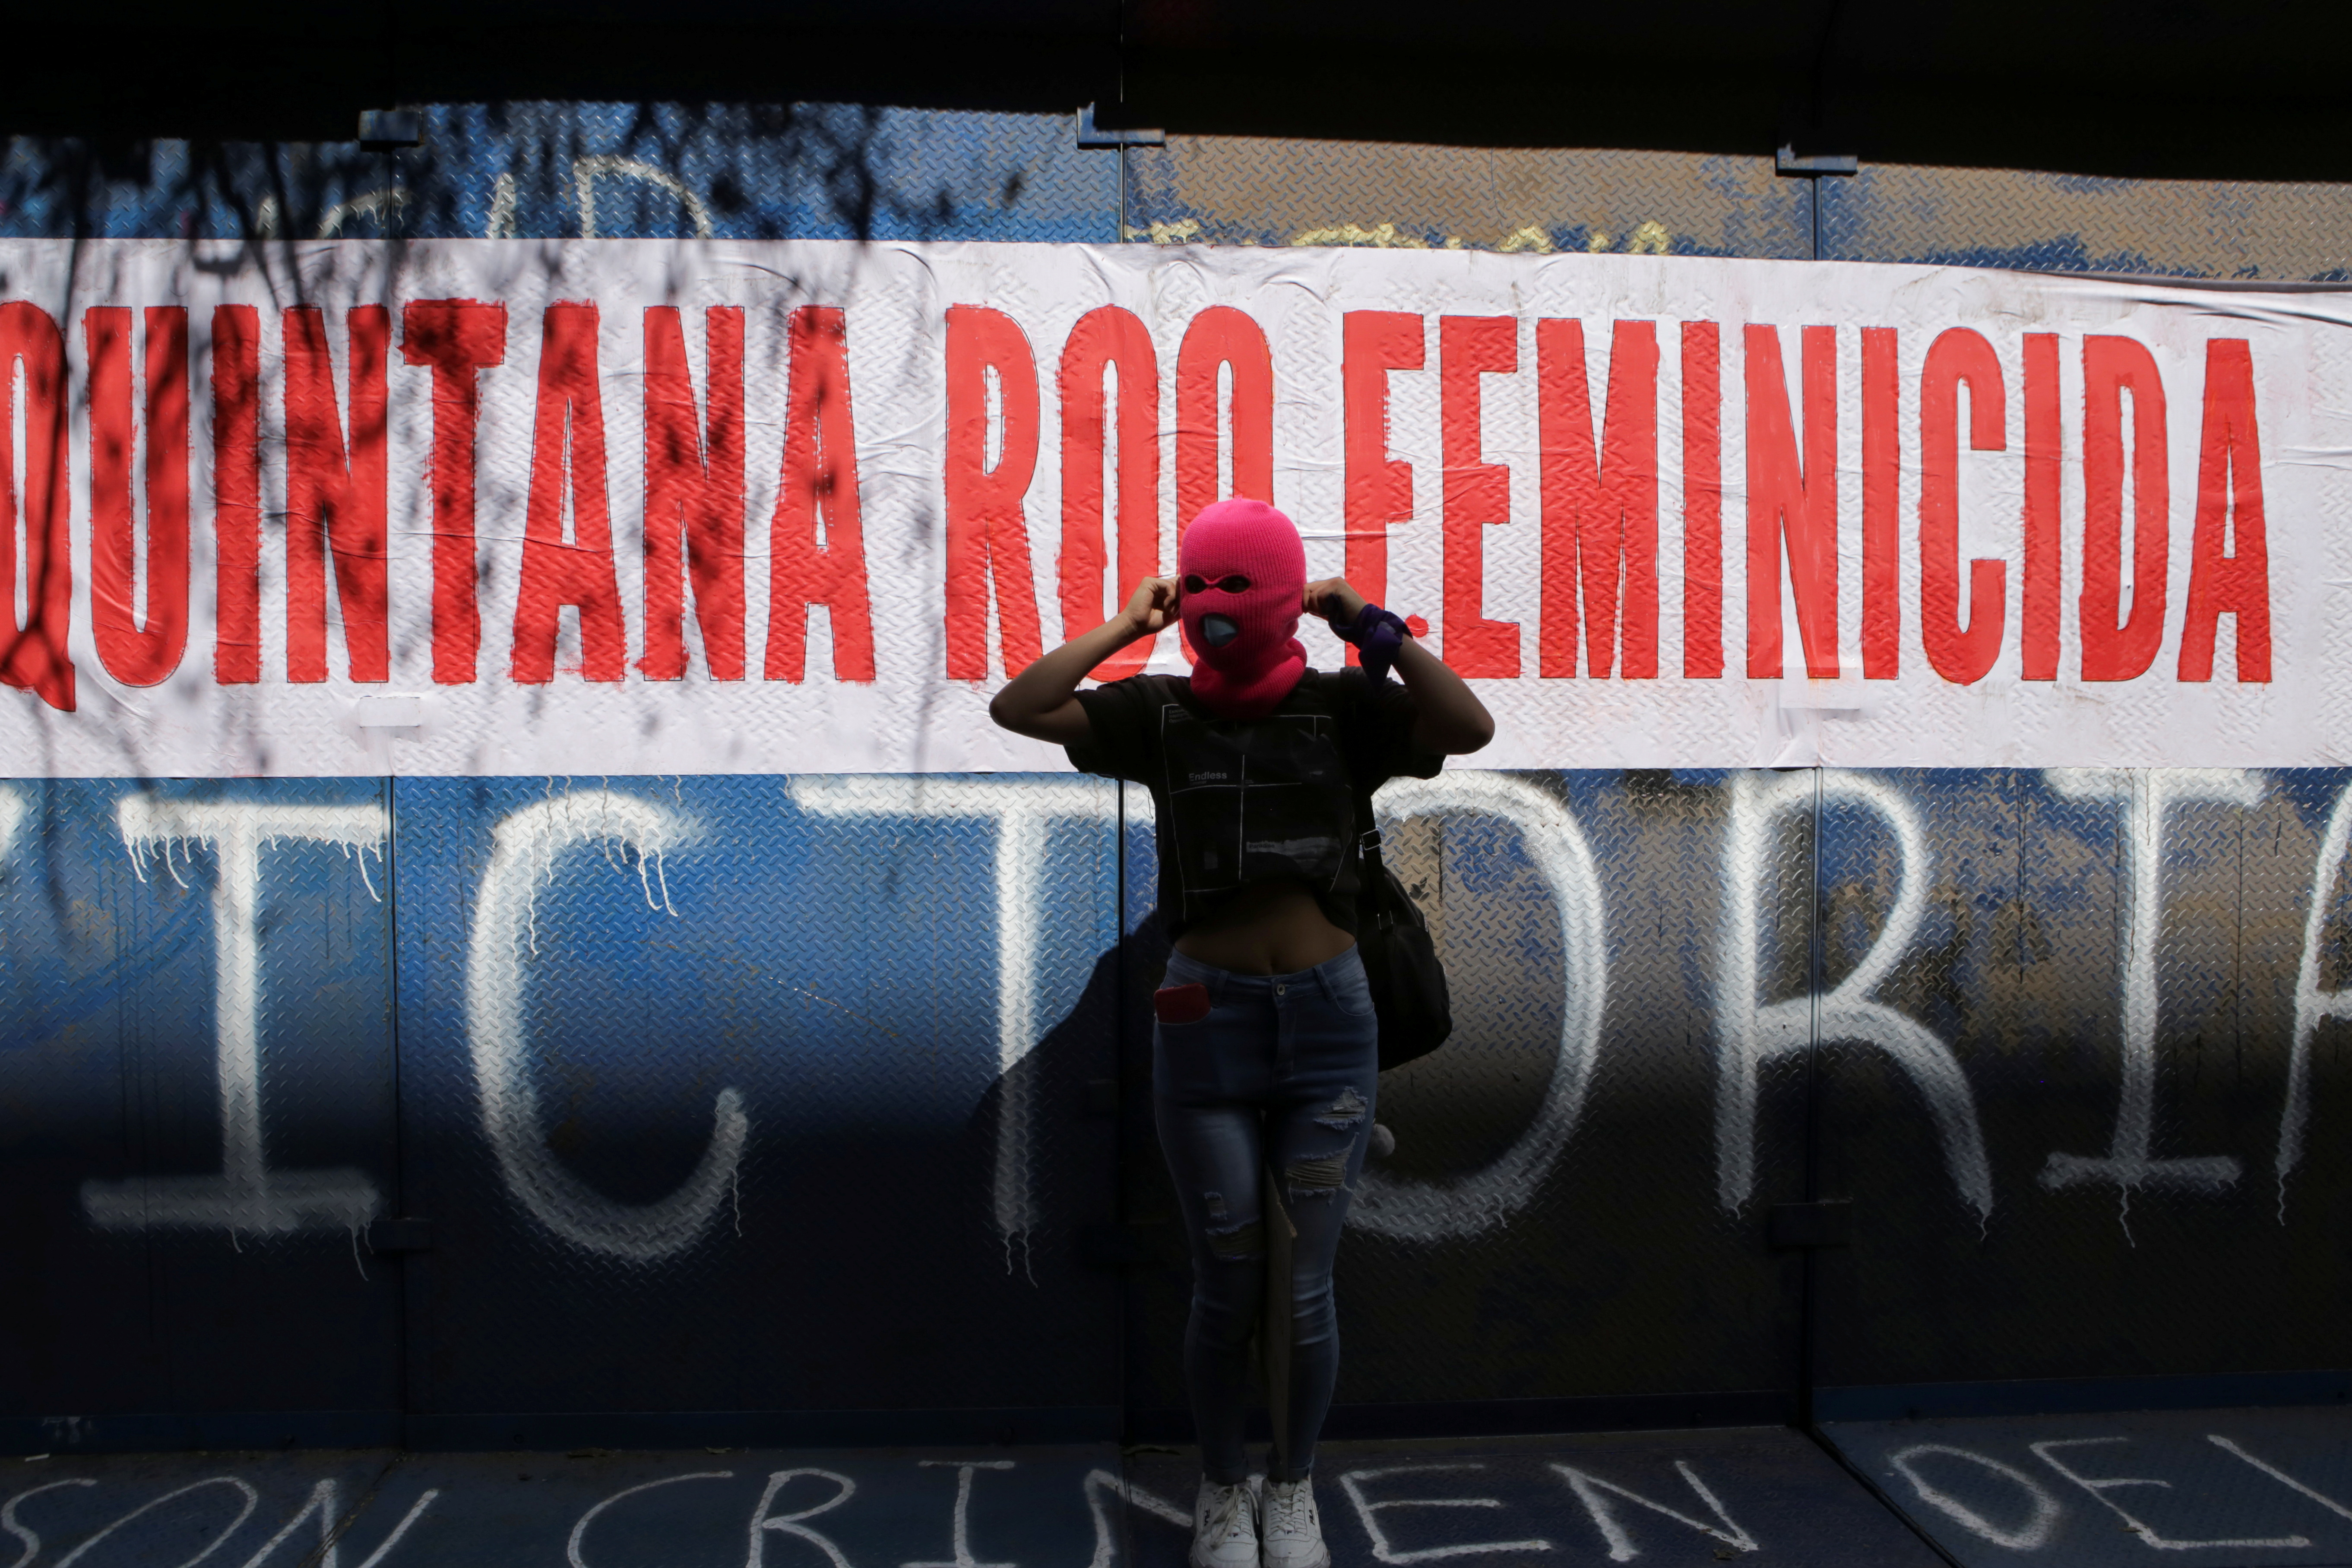  La marcha se realizó para exigir un alto a los feminicidios y la violencia contra las mujeres (REUTERS/Raquel Cunha)